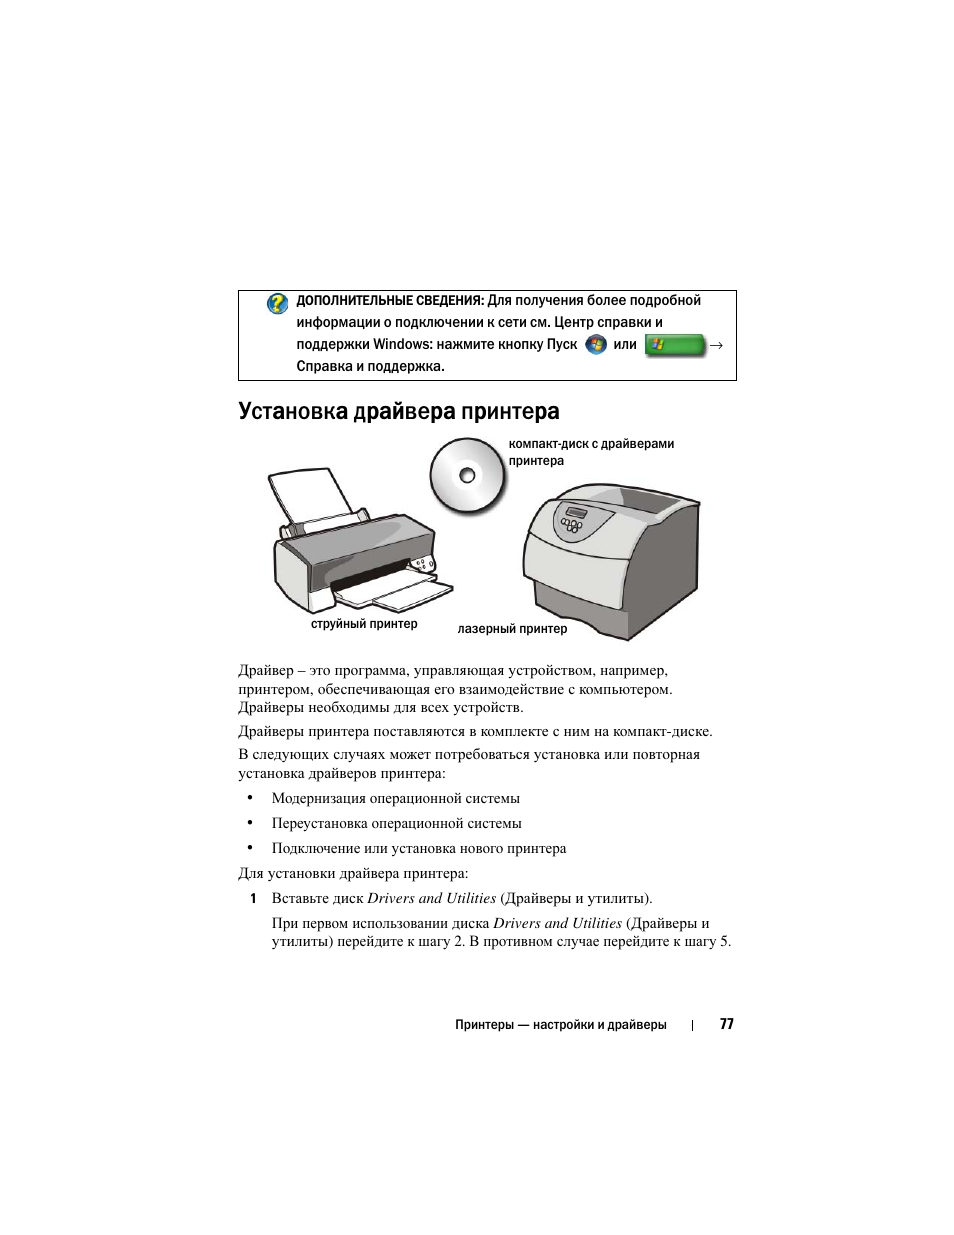 Установка драйвера принтера | Инструкция по эксплуатации Dell Inspiron 560 | Страница 77 / 384